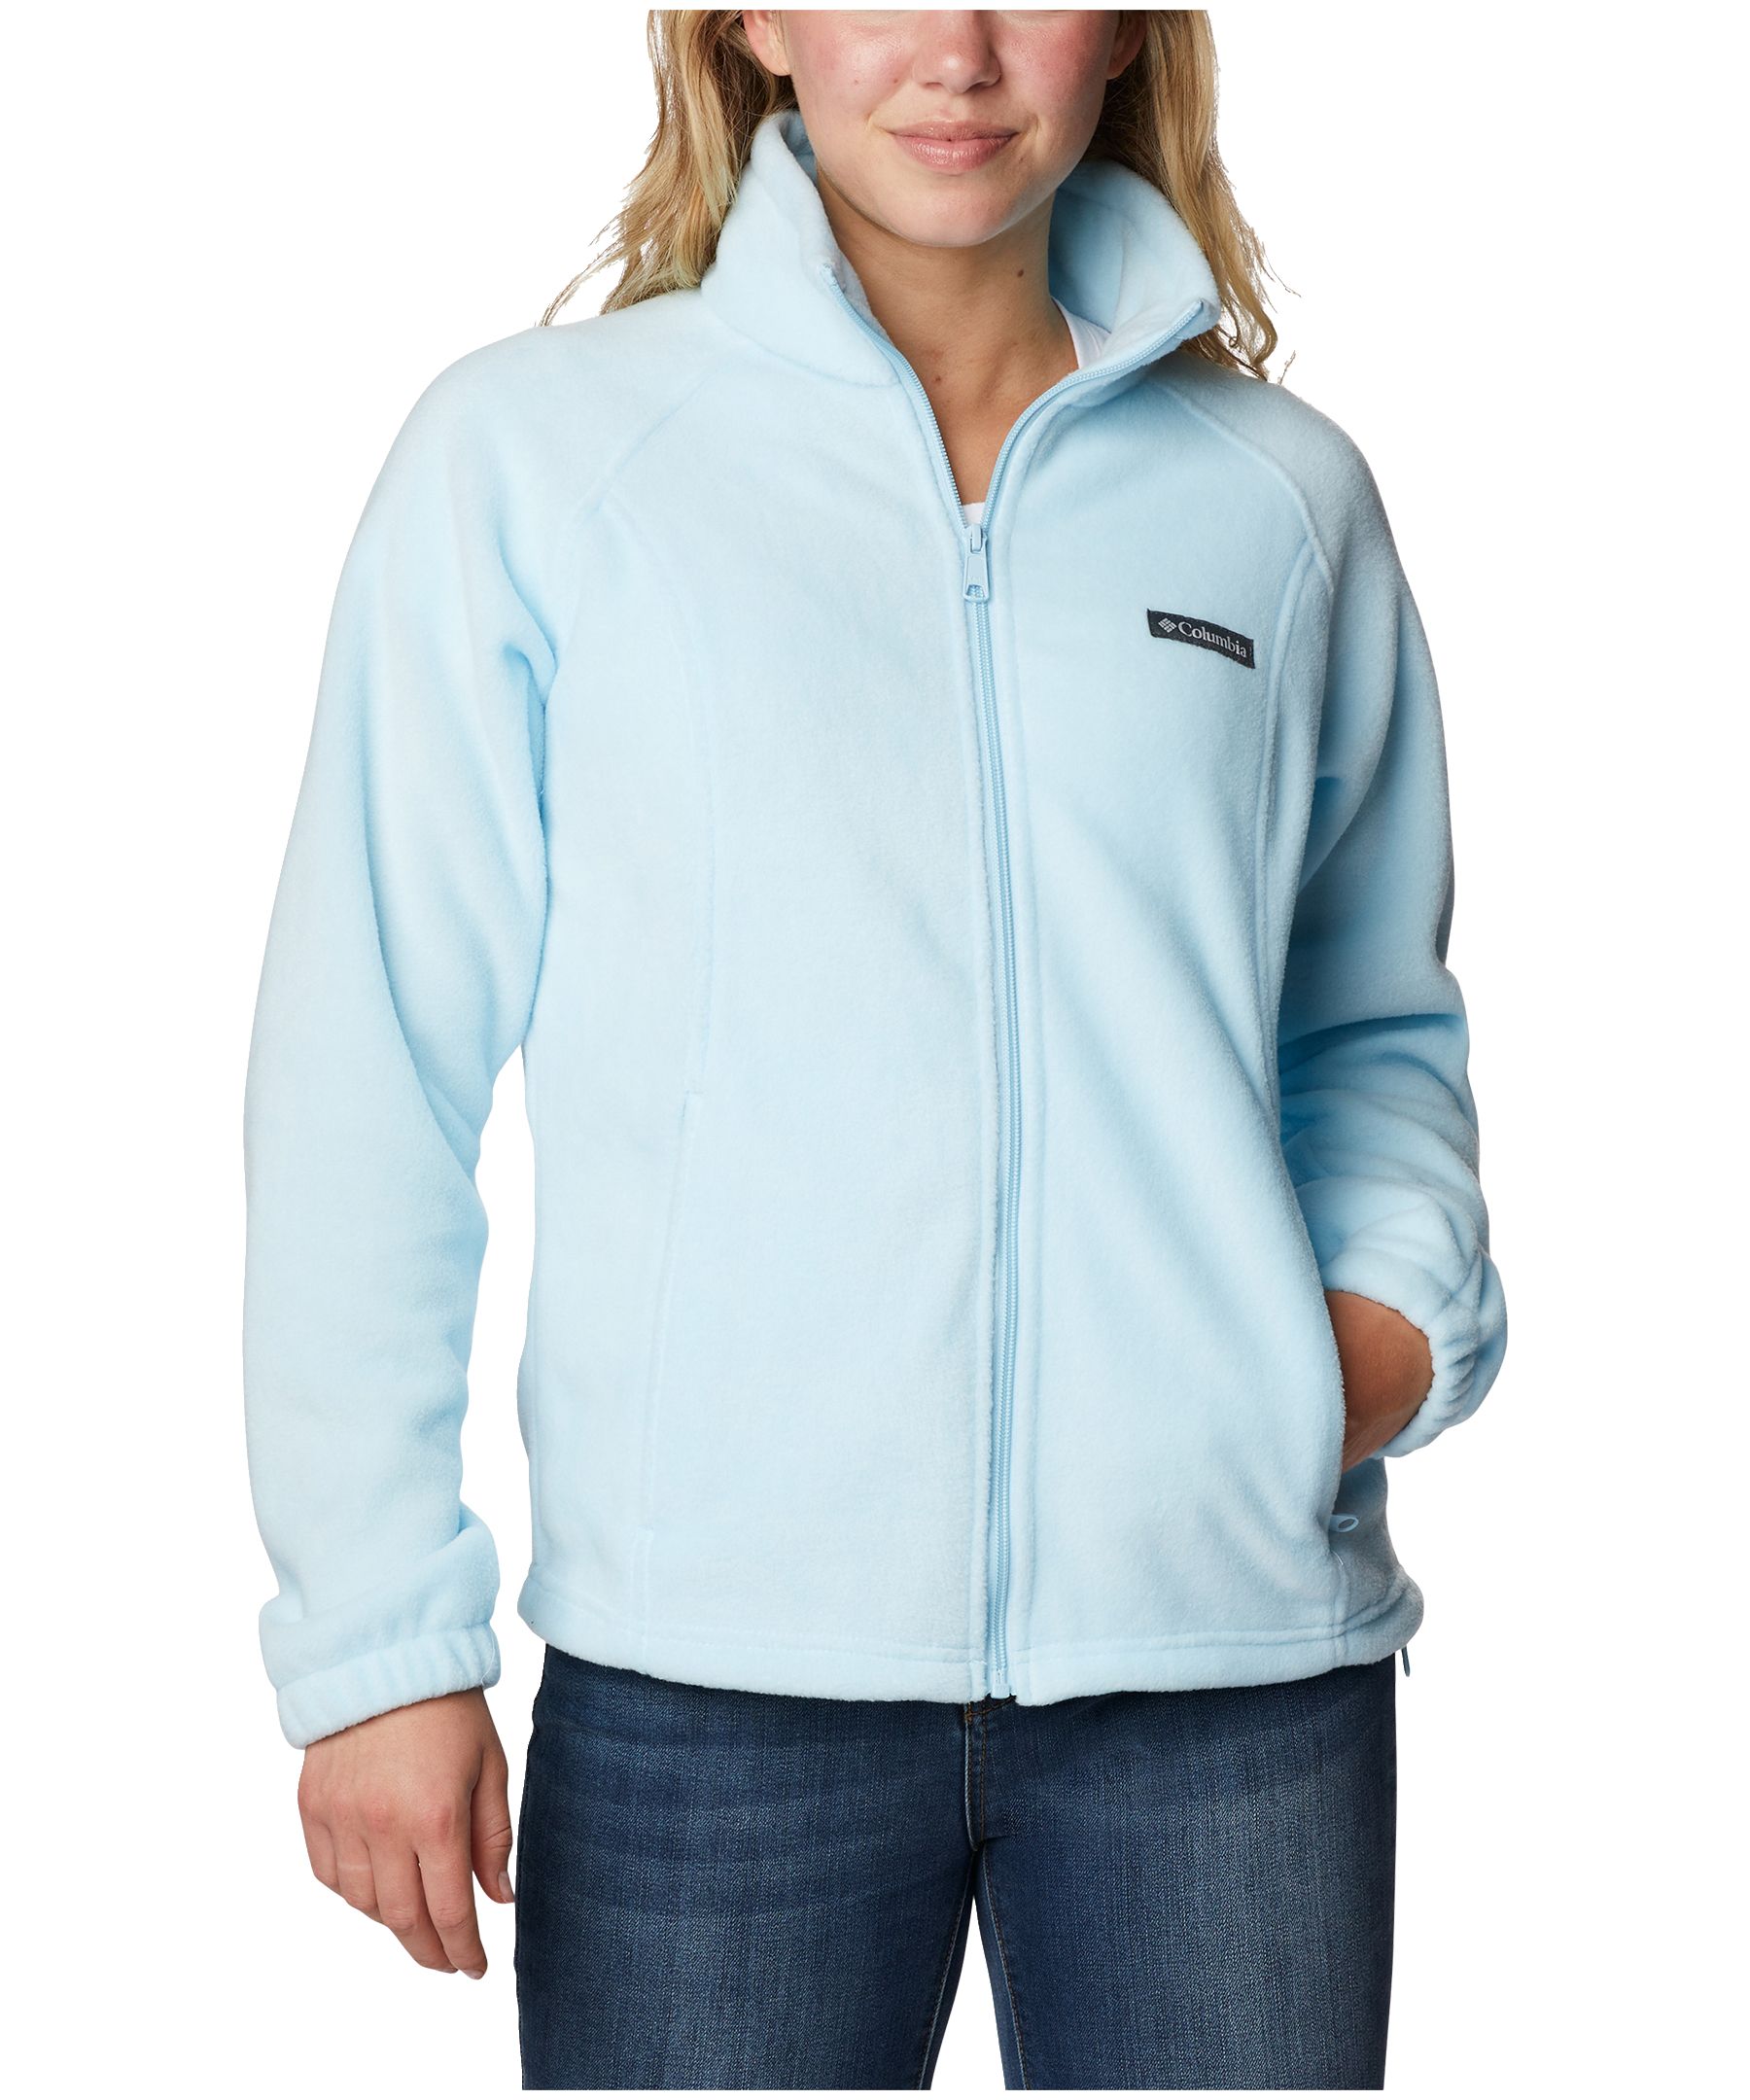 Columbia Women's Benton Springs Full Zip Soft Fleece Jacket